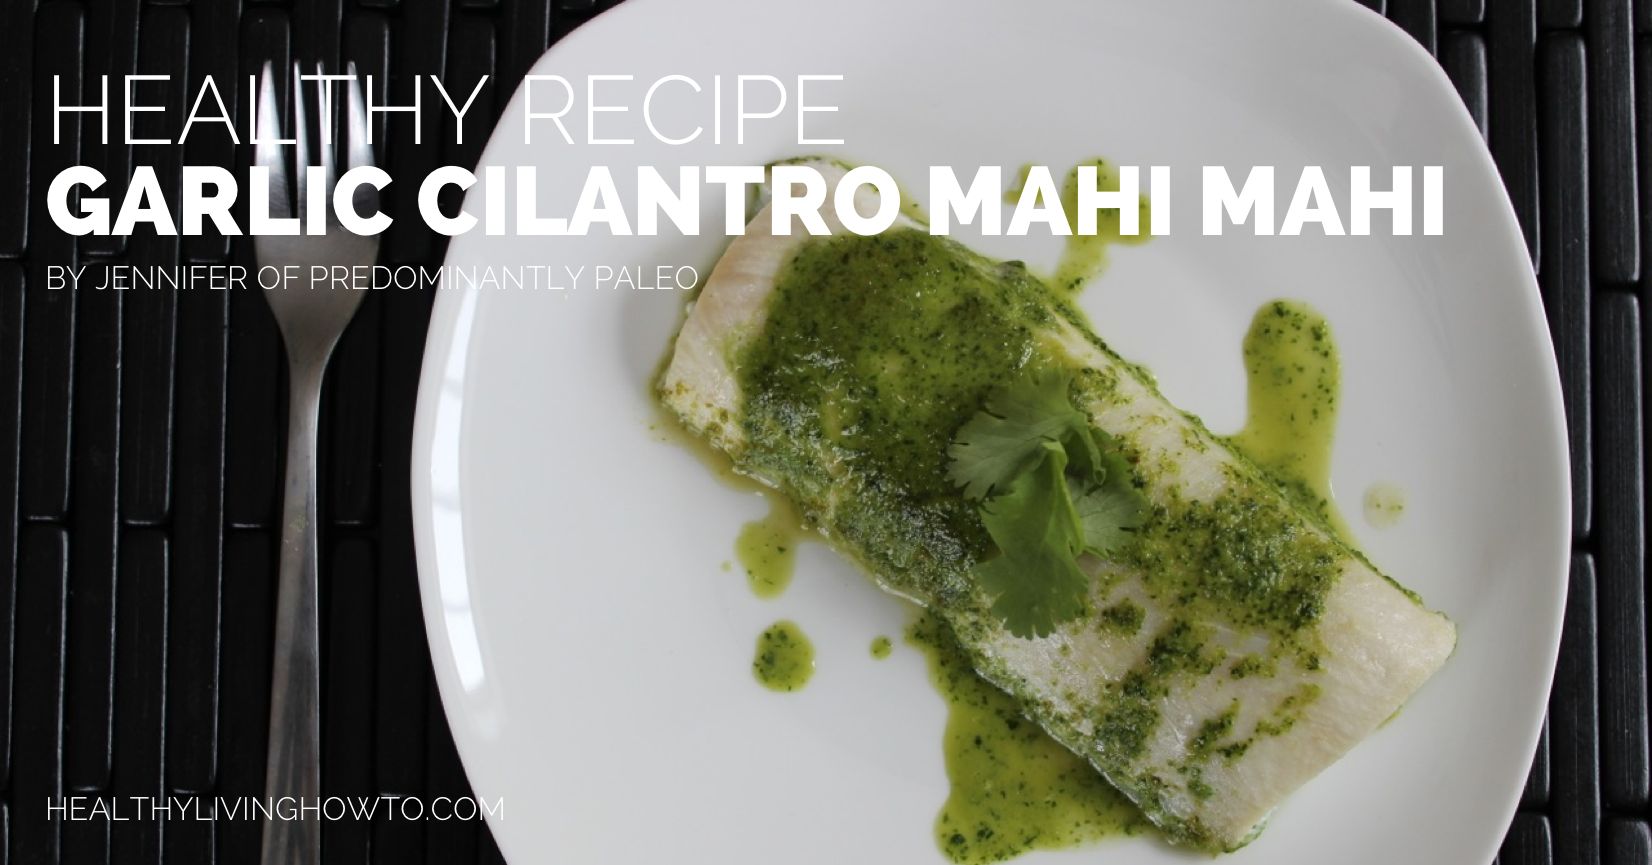 Healthy Recipe: Garlic Cilantro Mahi Mahi | healthylivinghowto.com